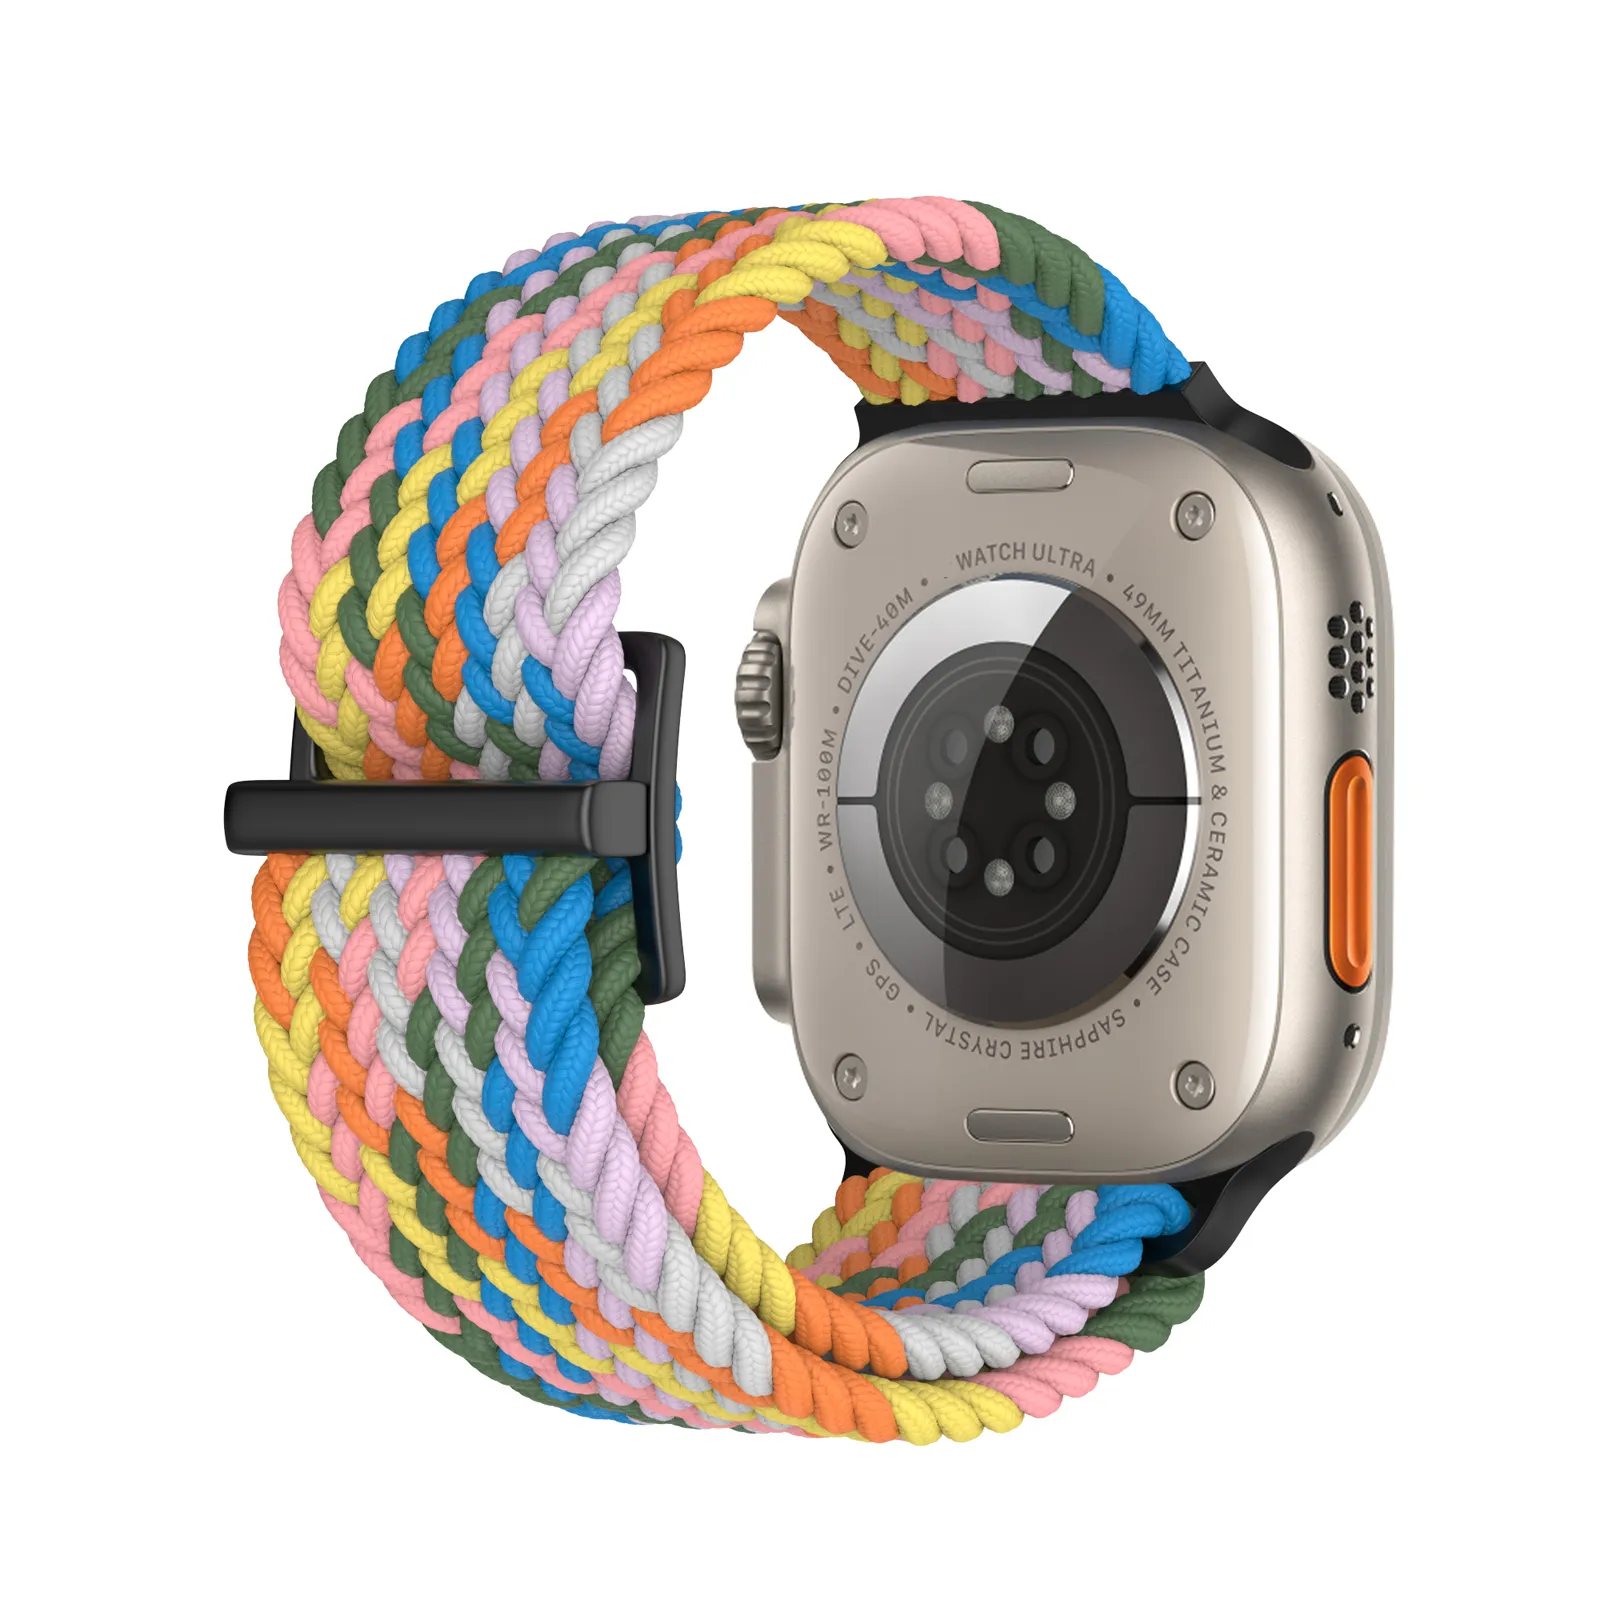 Diseño Mini hebilla magnética estilo deportivo tela tejida elástica suave nueva correa de reloj transpirable para Apple Watch Band Nylon